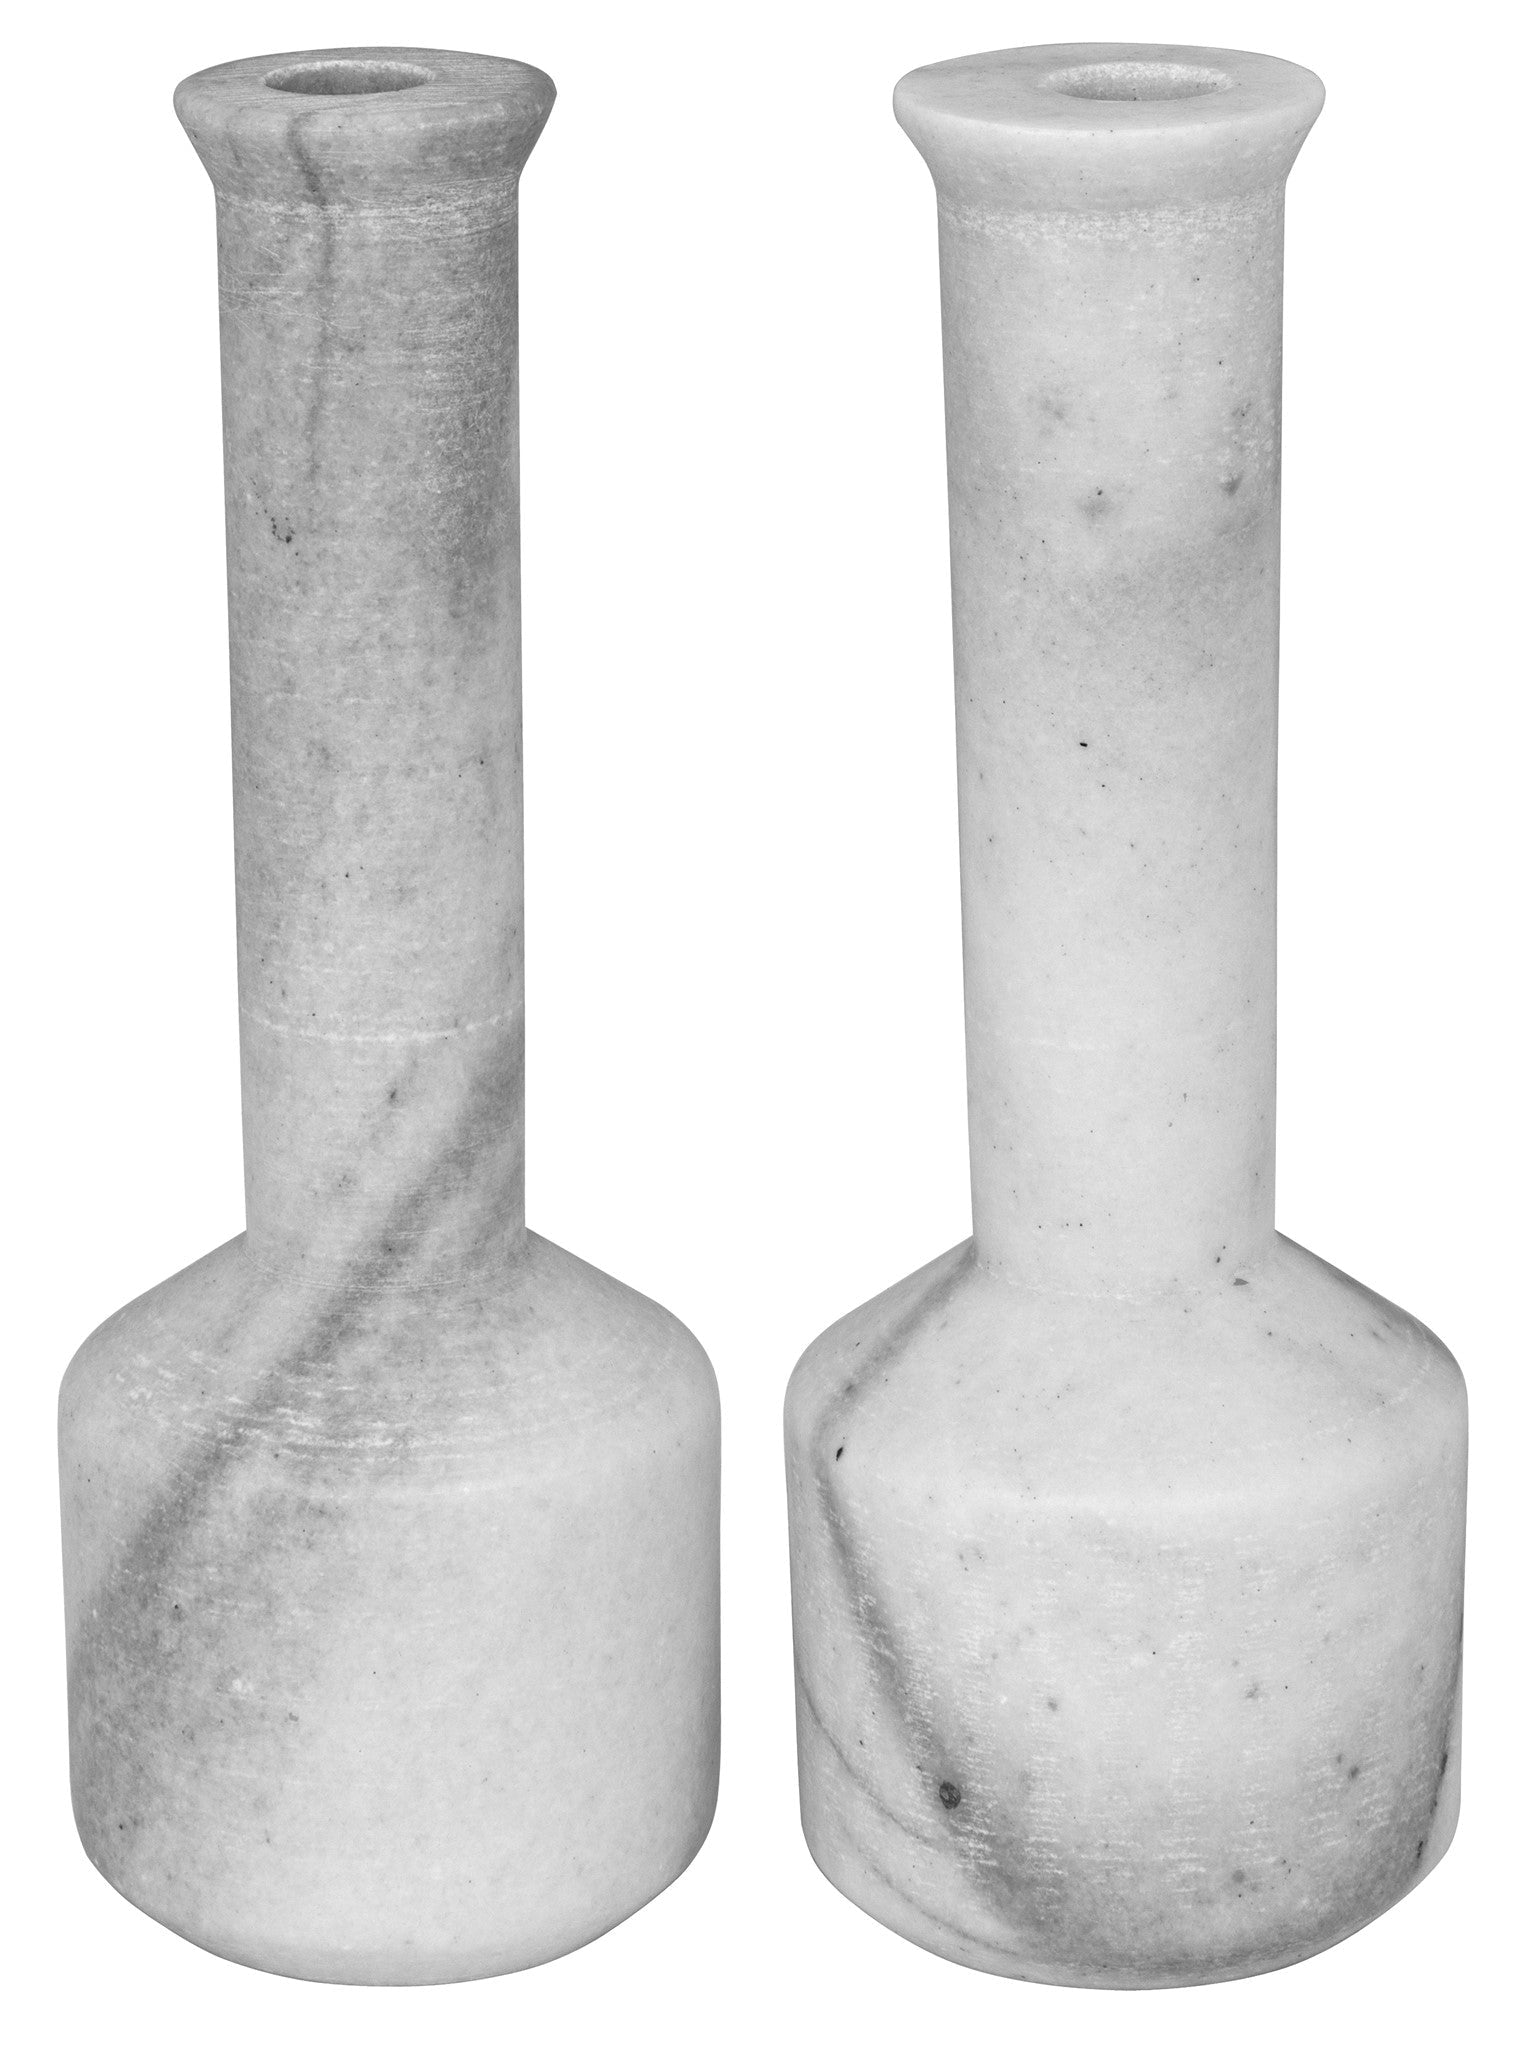 Markos Decorative Candle Holder, Set of 2 - White Marble - - Decor - Tipplergoods